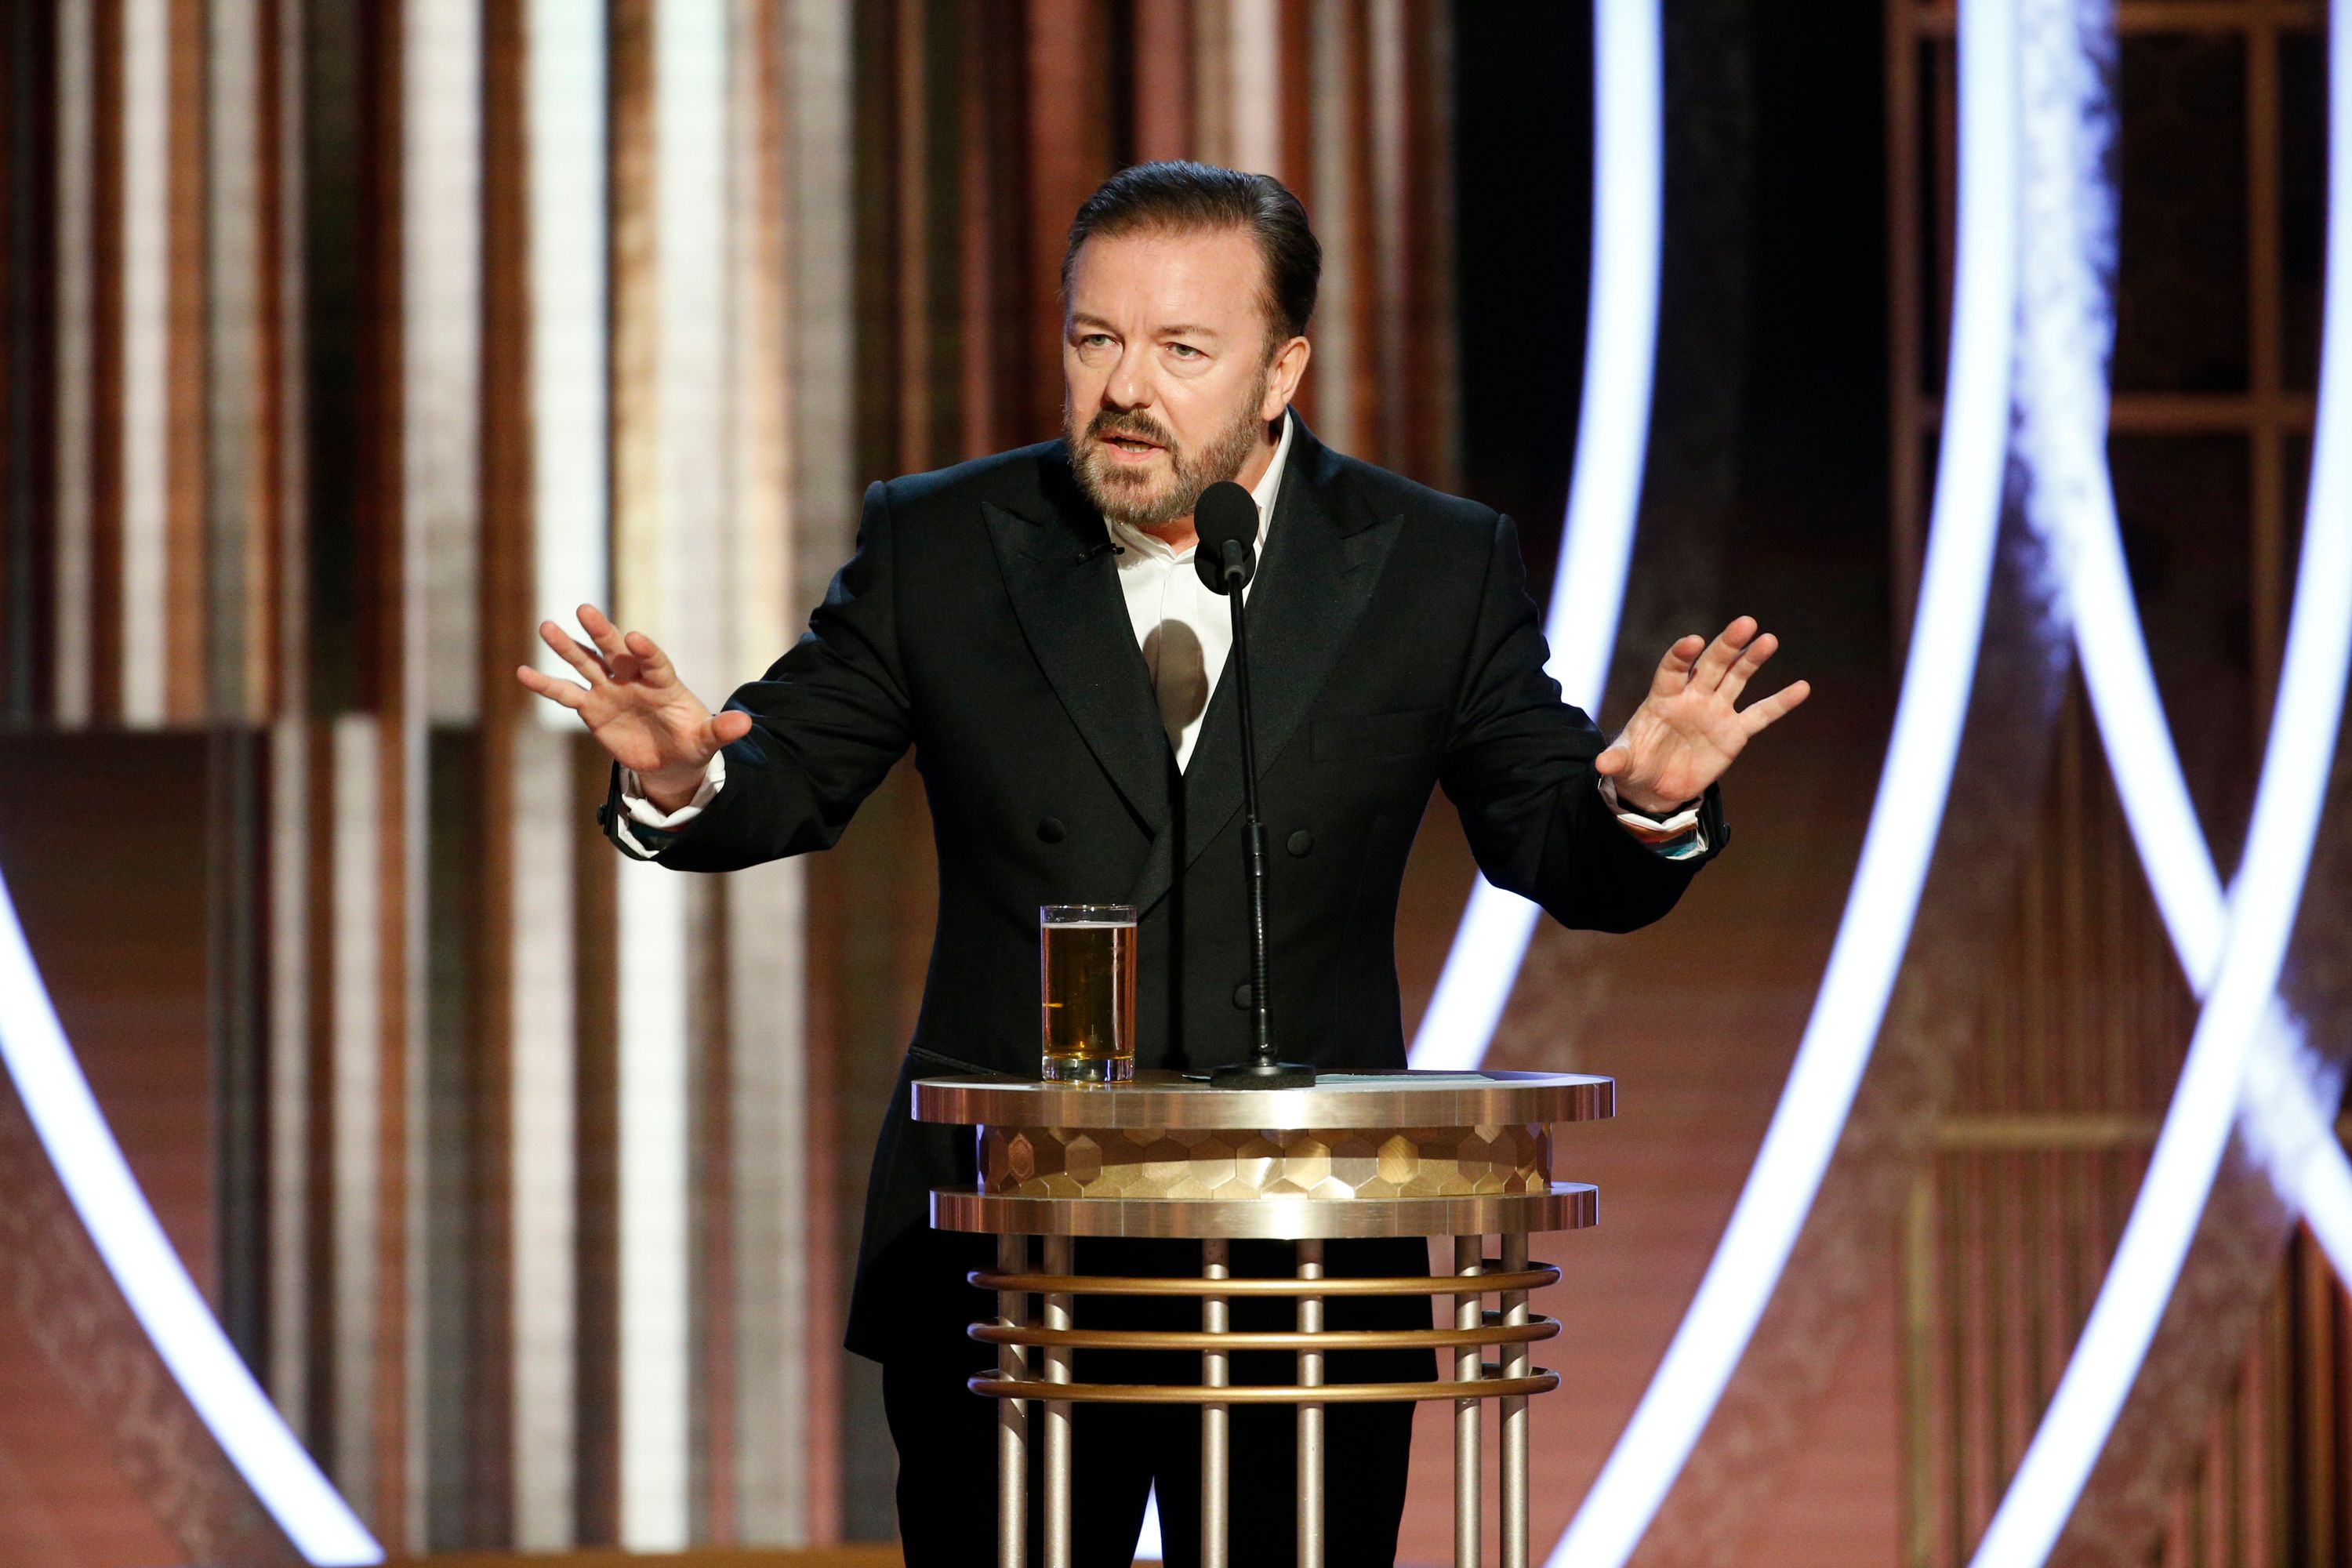 Ricky Gervais en los Golden Globe. Les recomendó a los eventuales ganadores que evitaran las largas declamaciones políticas: "agradezcanle a su agente y a su Dios y ¡desaparezcan!" Paul Drinkwater/NBCUniversal/Handout via REUTERS